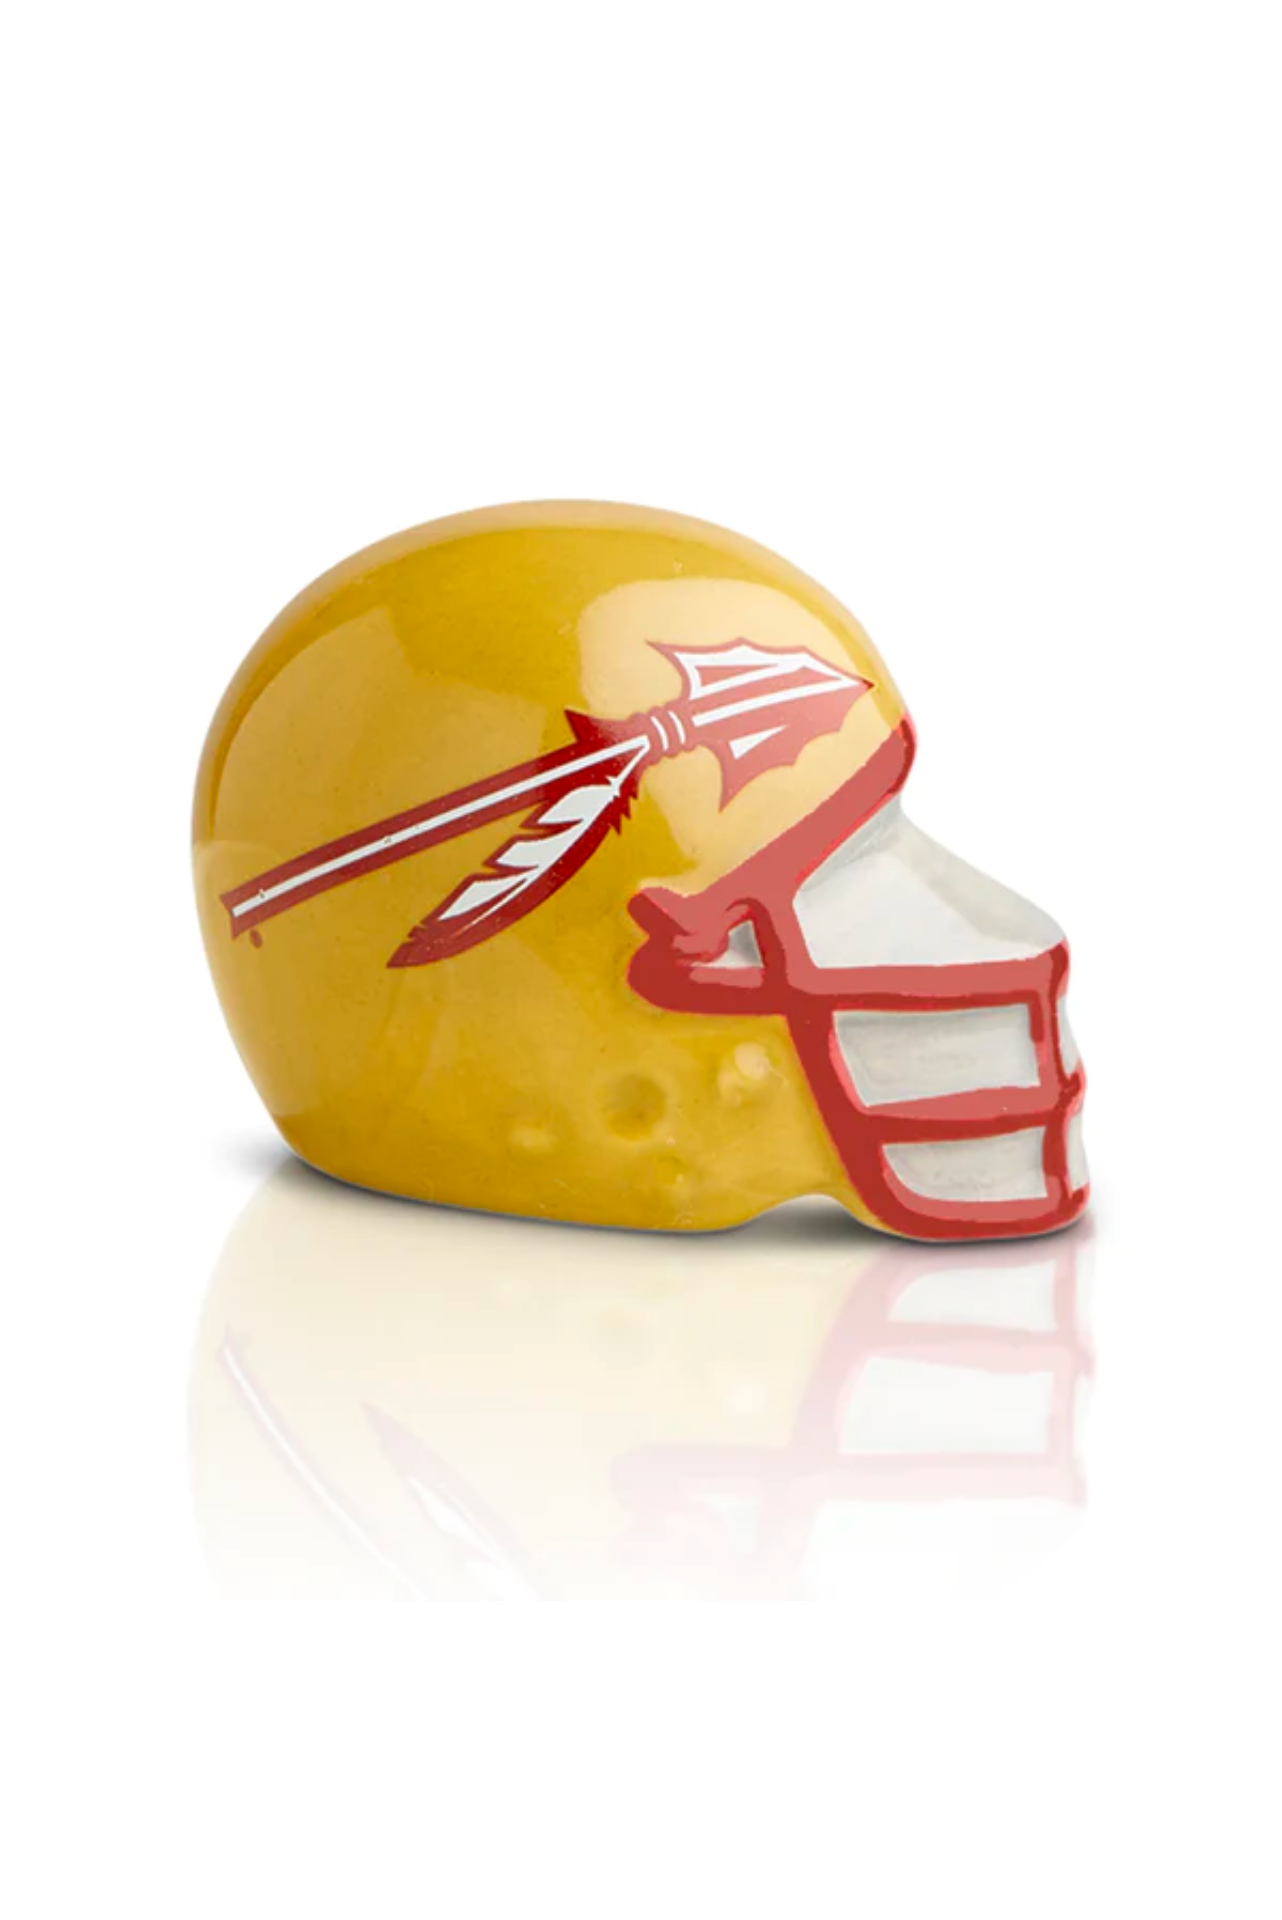 Florida State Helmet